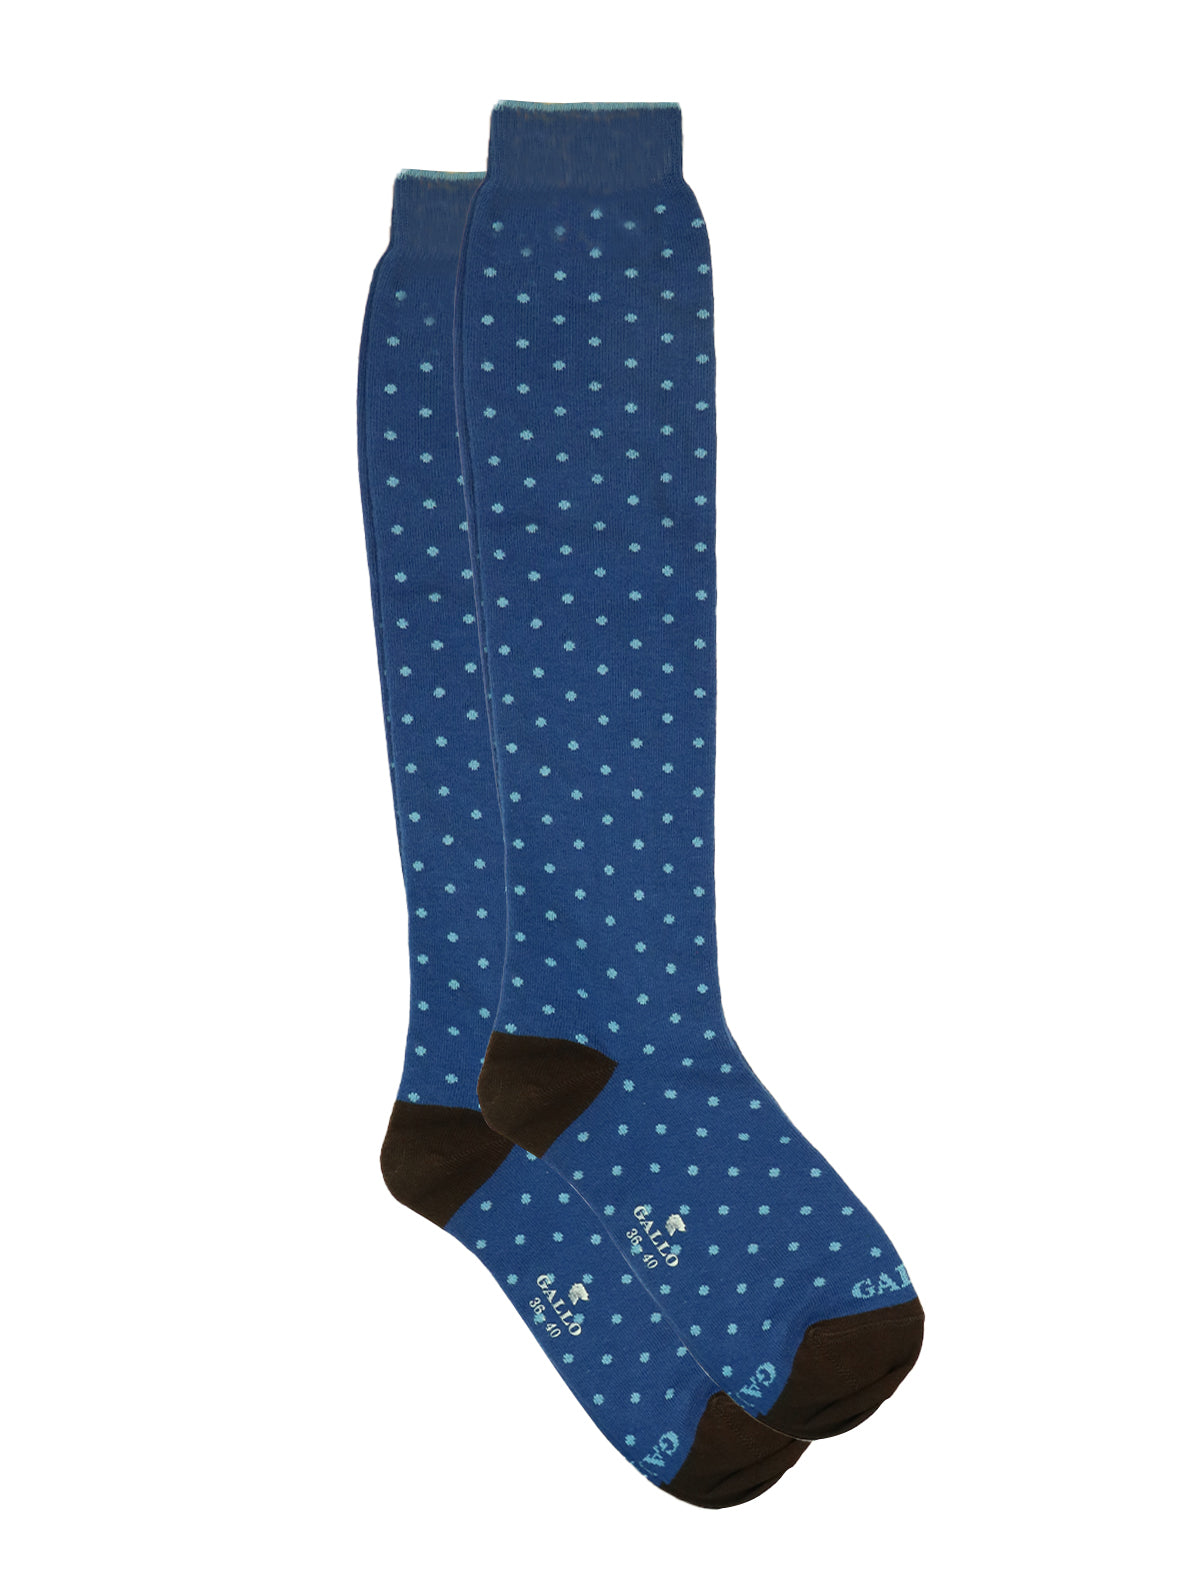 Gallo Long Socks in Red Polka Dot Print